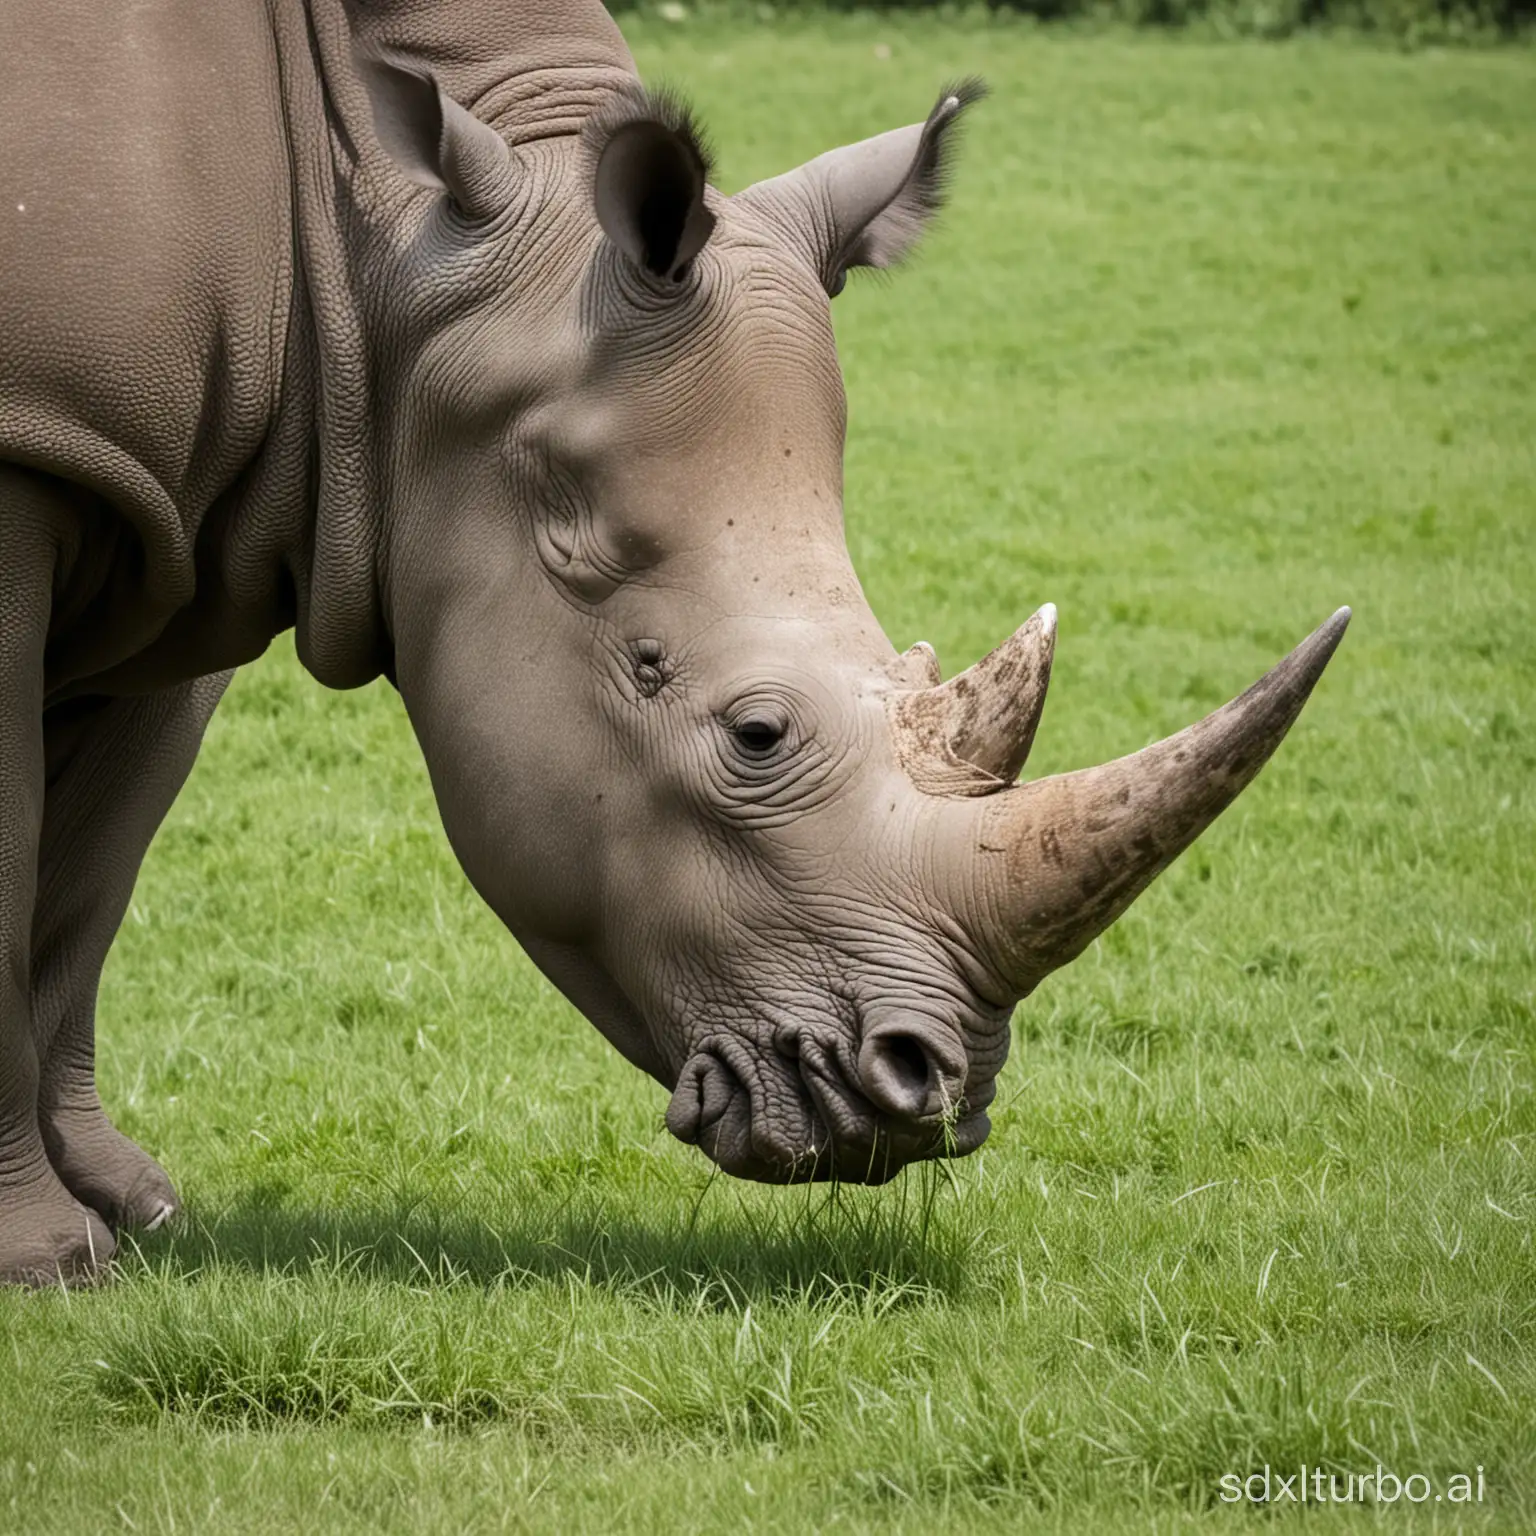 A rhinoceros eating grass